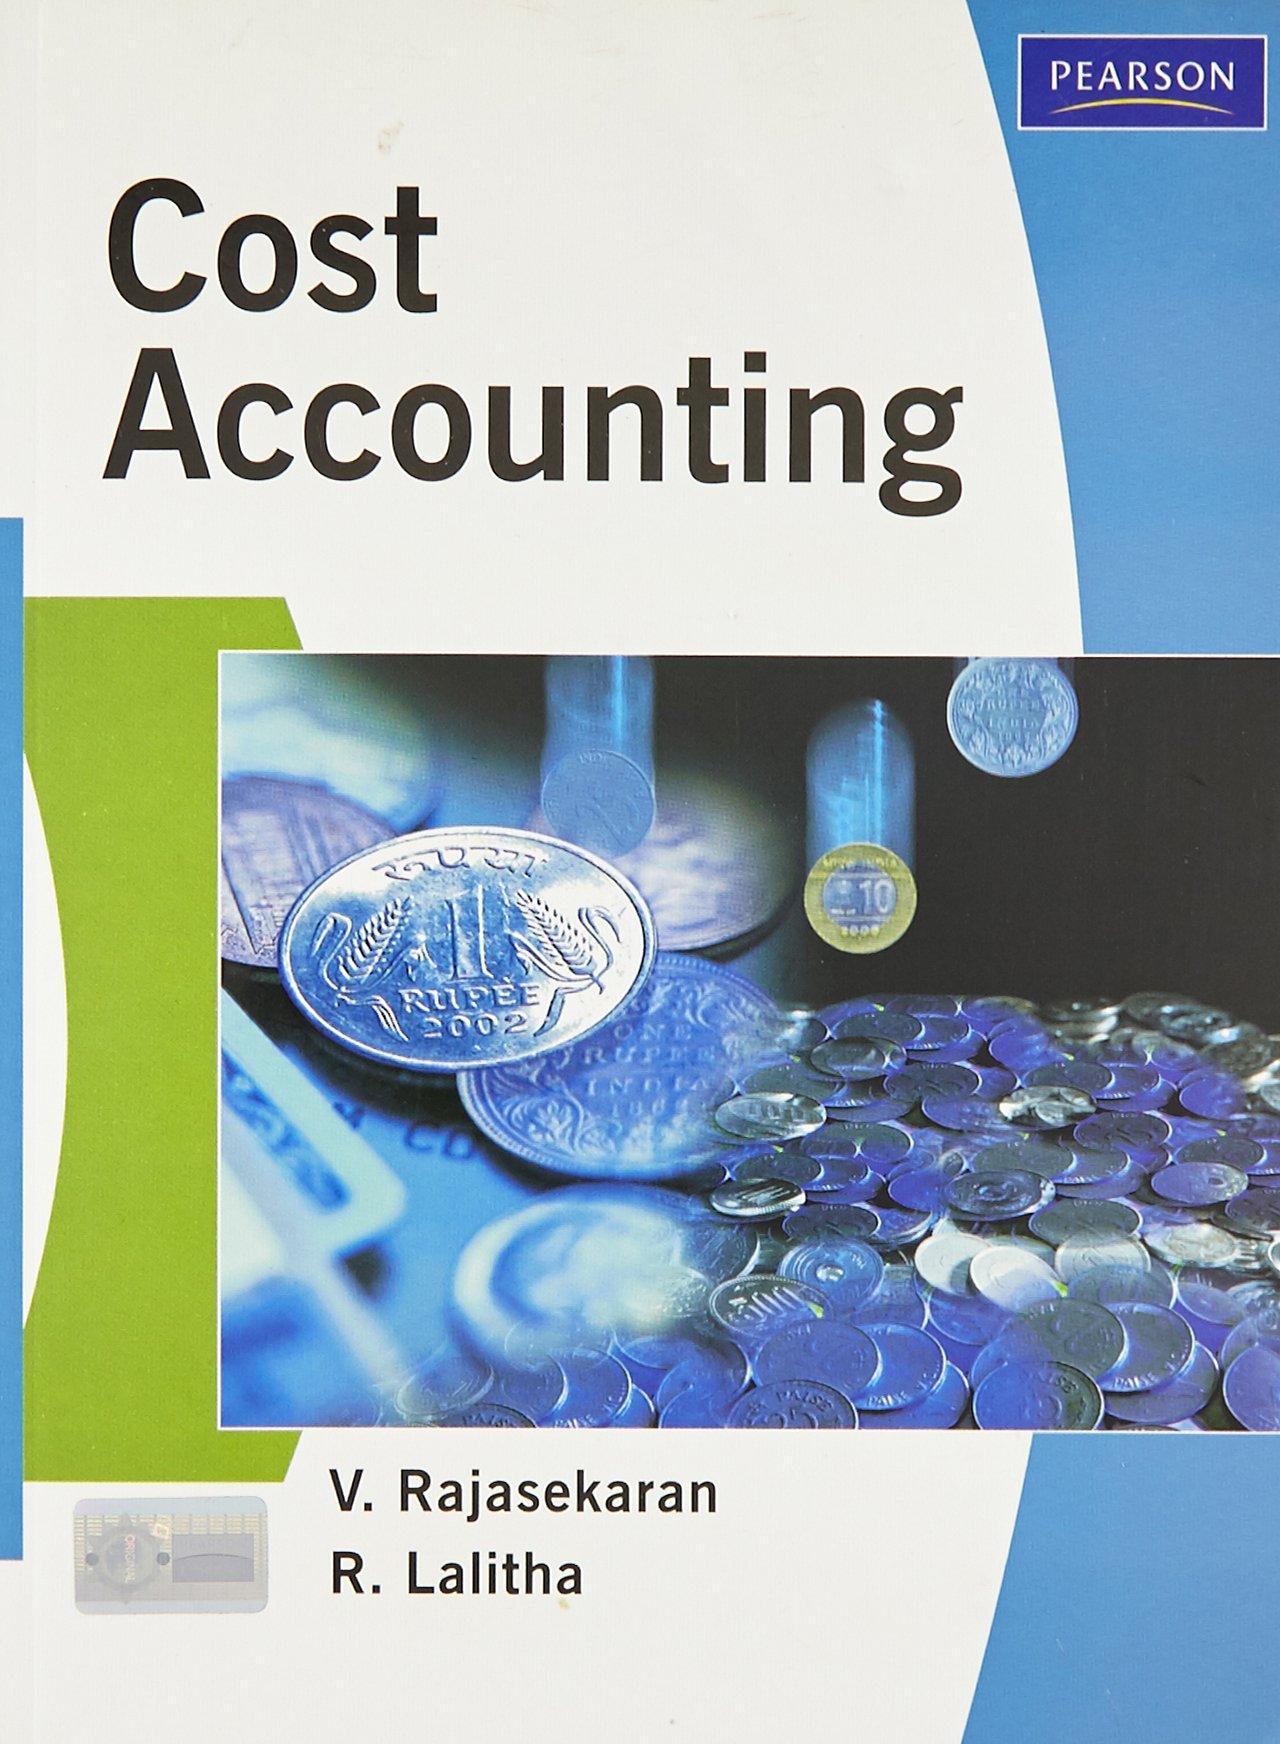 cost accounting 1st edition v. rajasekaran, r. lalitha 813173207x, 9788131732076